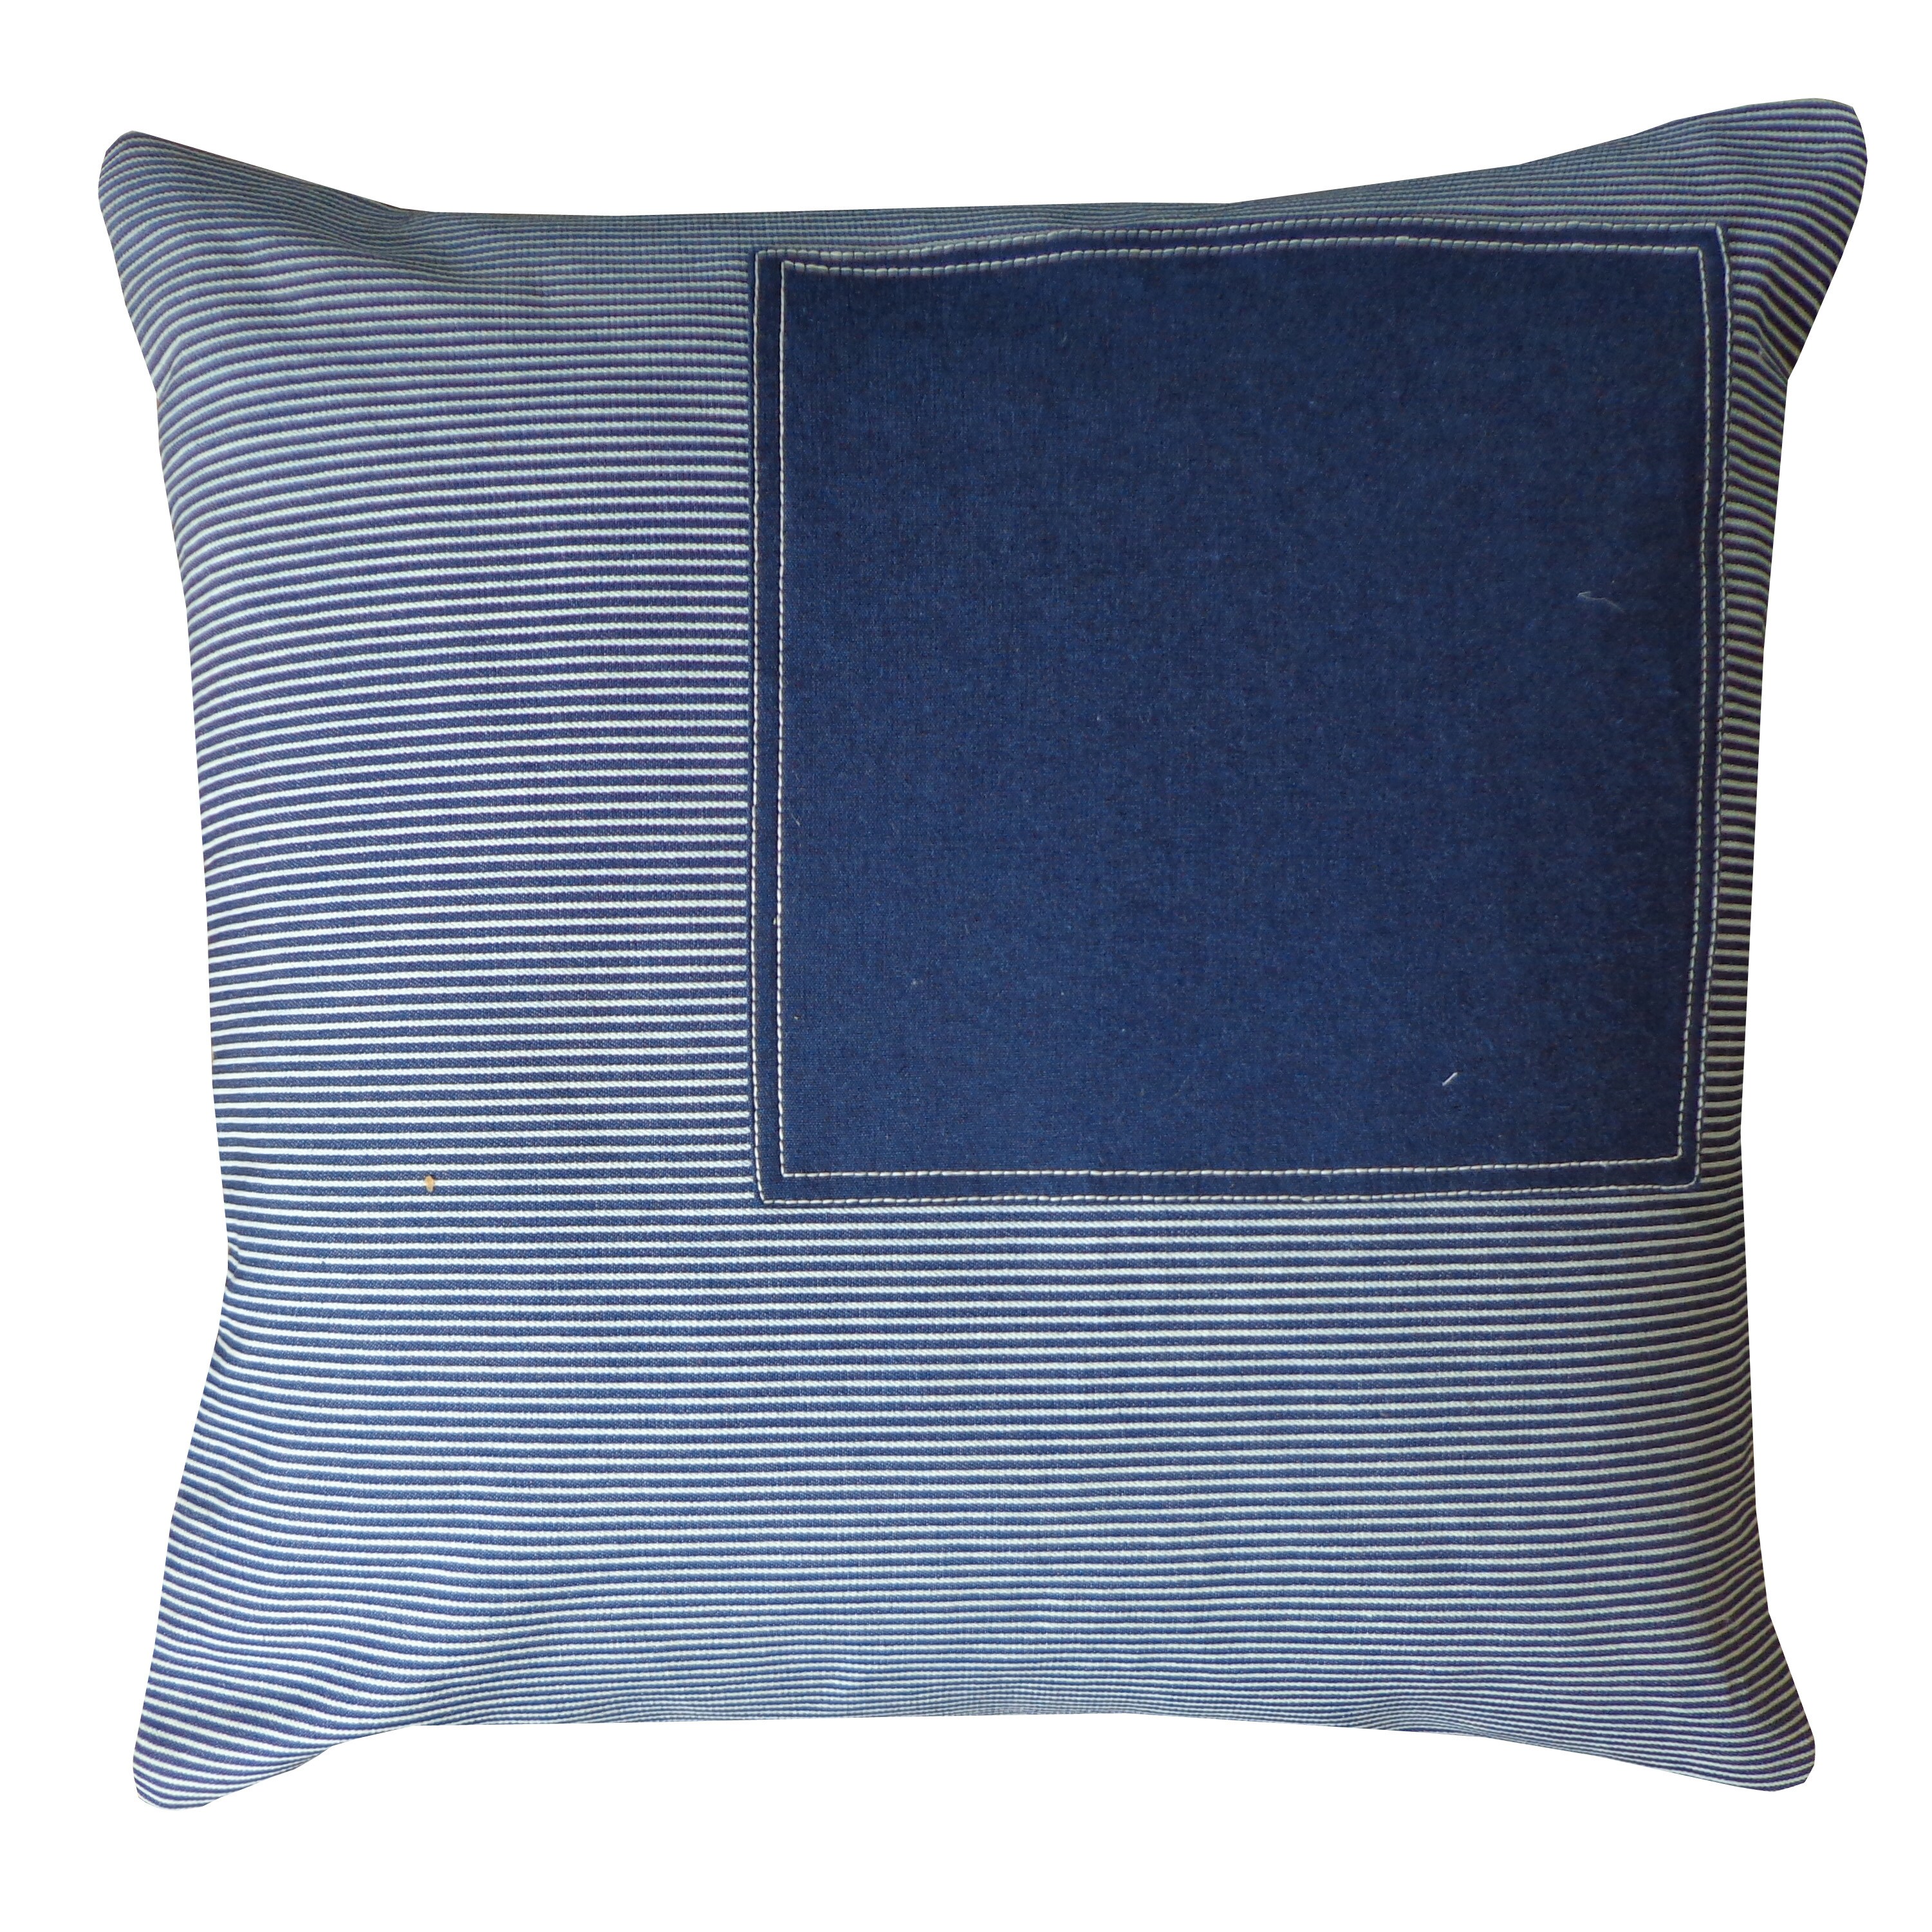 Window Stripe Navy Decorative Throw Pillow Navy 20 x 20 807882125292 | eBay